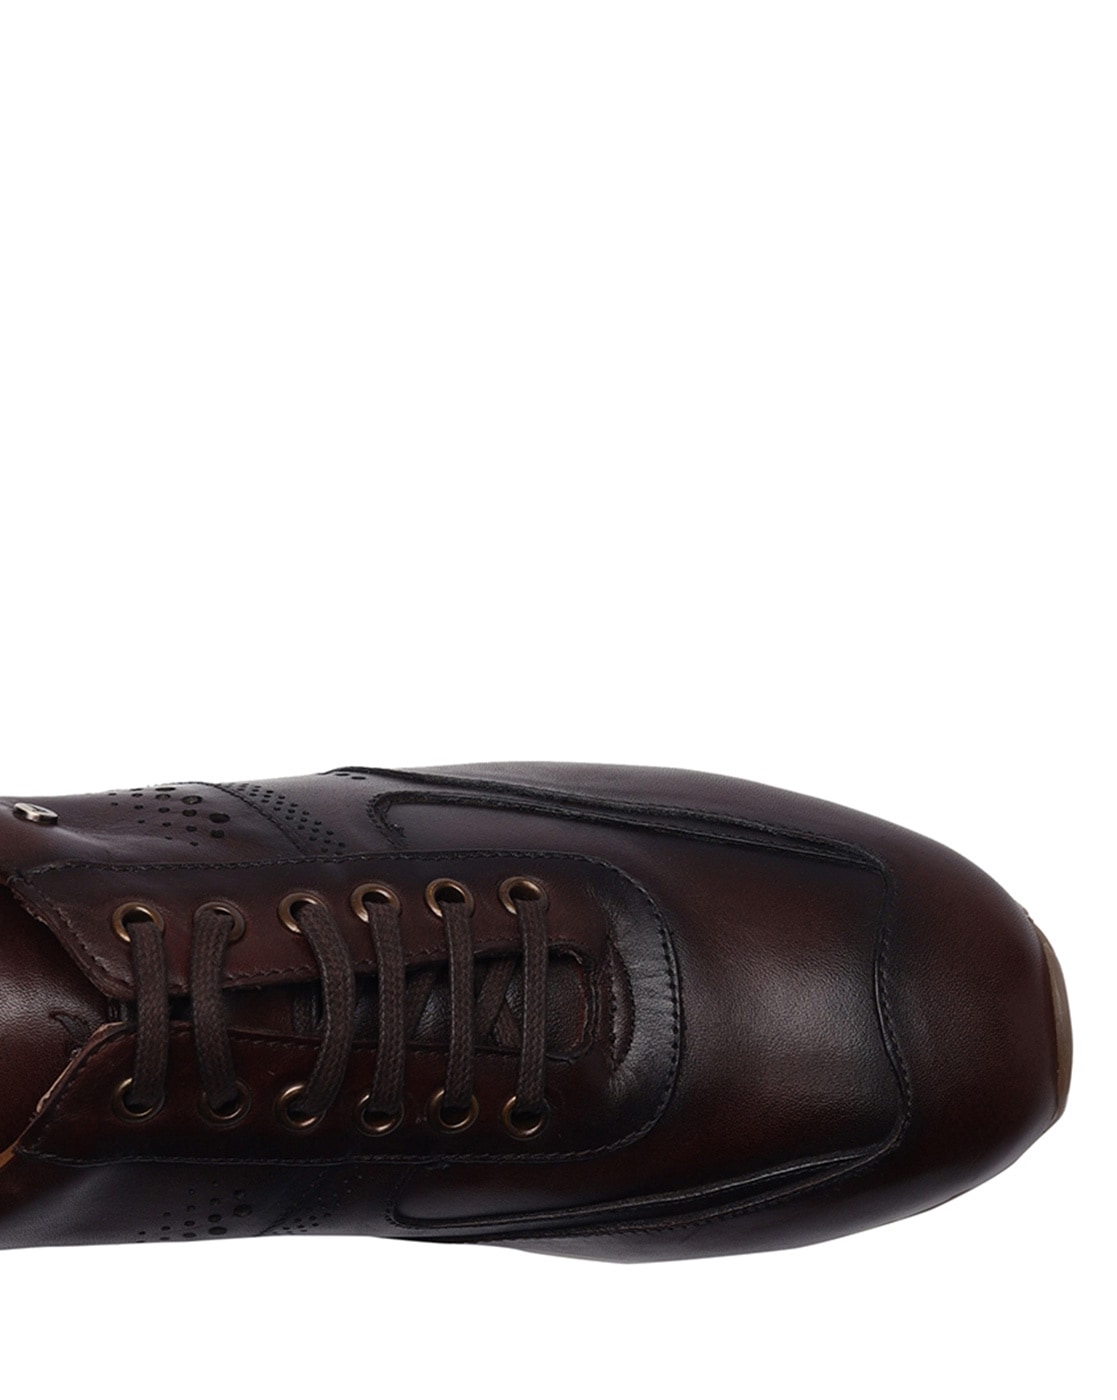 blackberrys Regular Fit Crust Leather Slip-On Shoe (Size: 8)-BT-Lunar # TAN  : Amazon.in: Shoes & Handbags